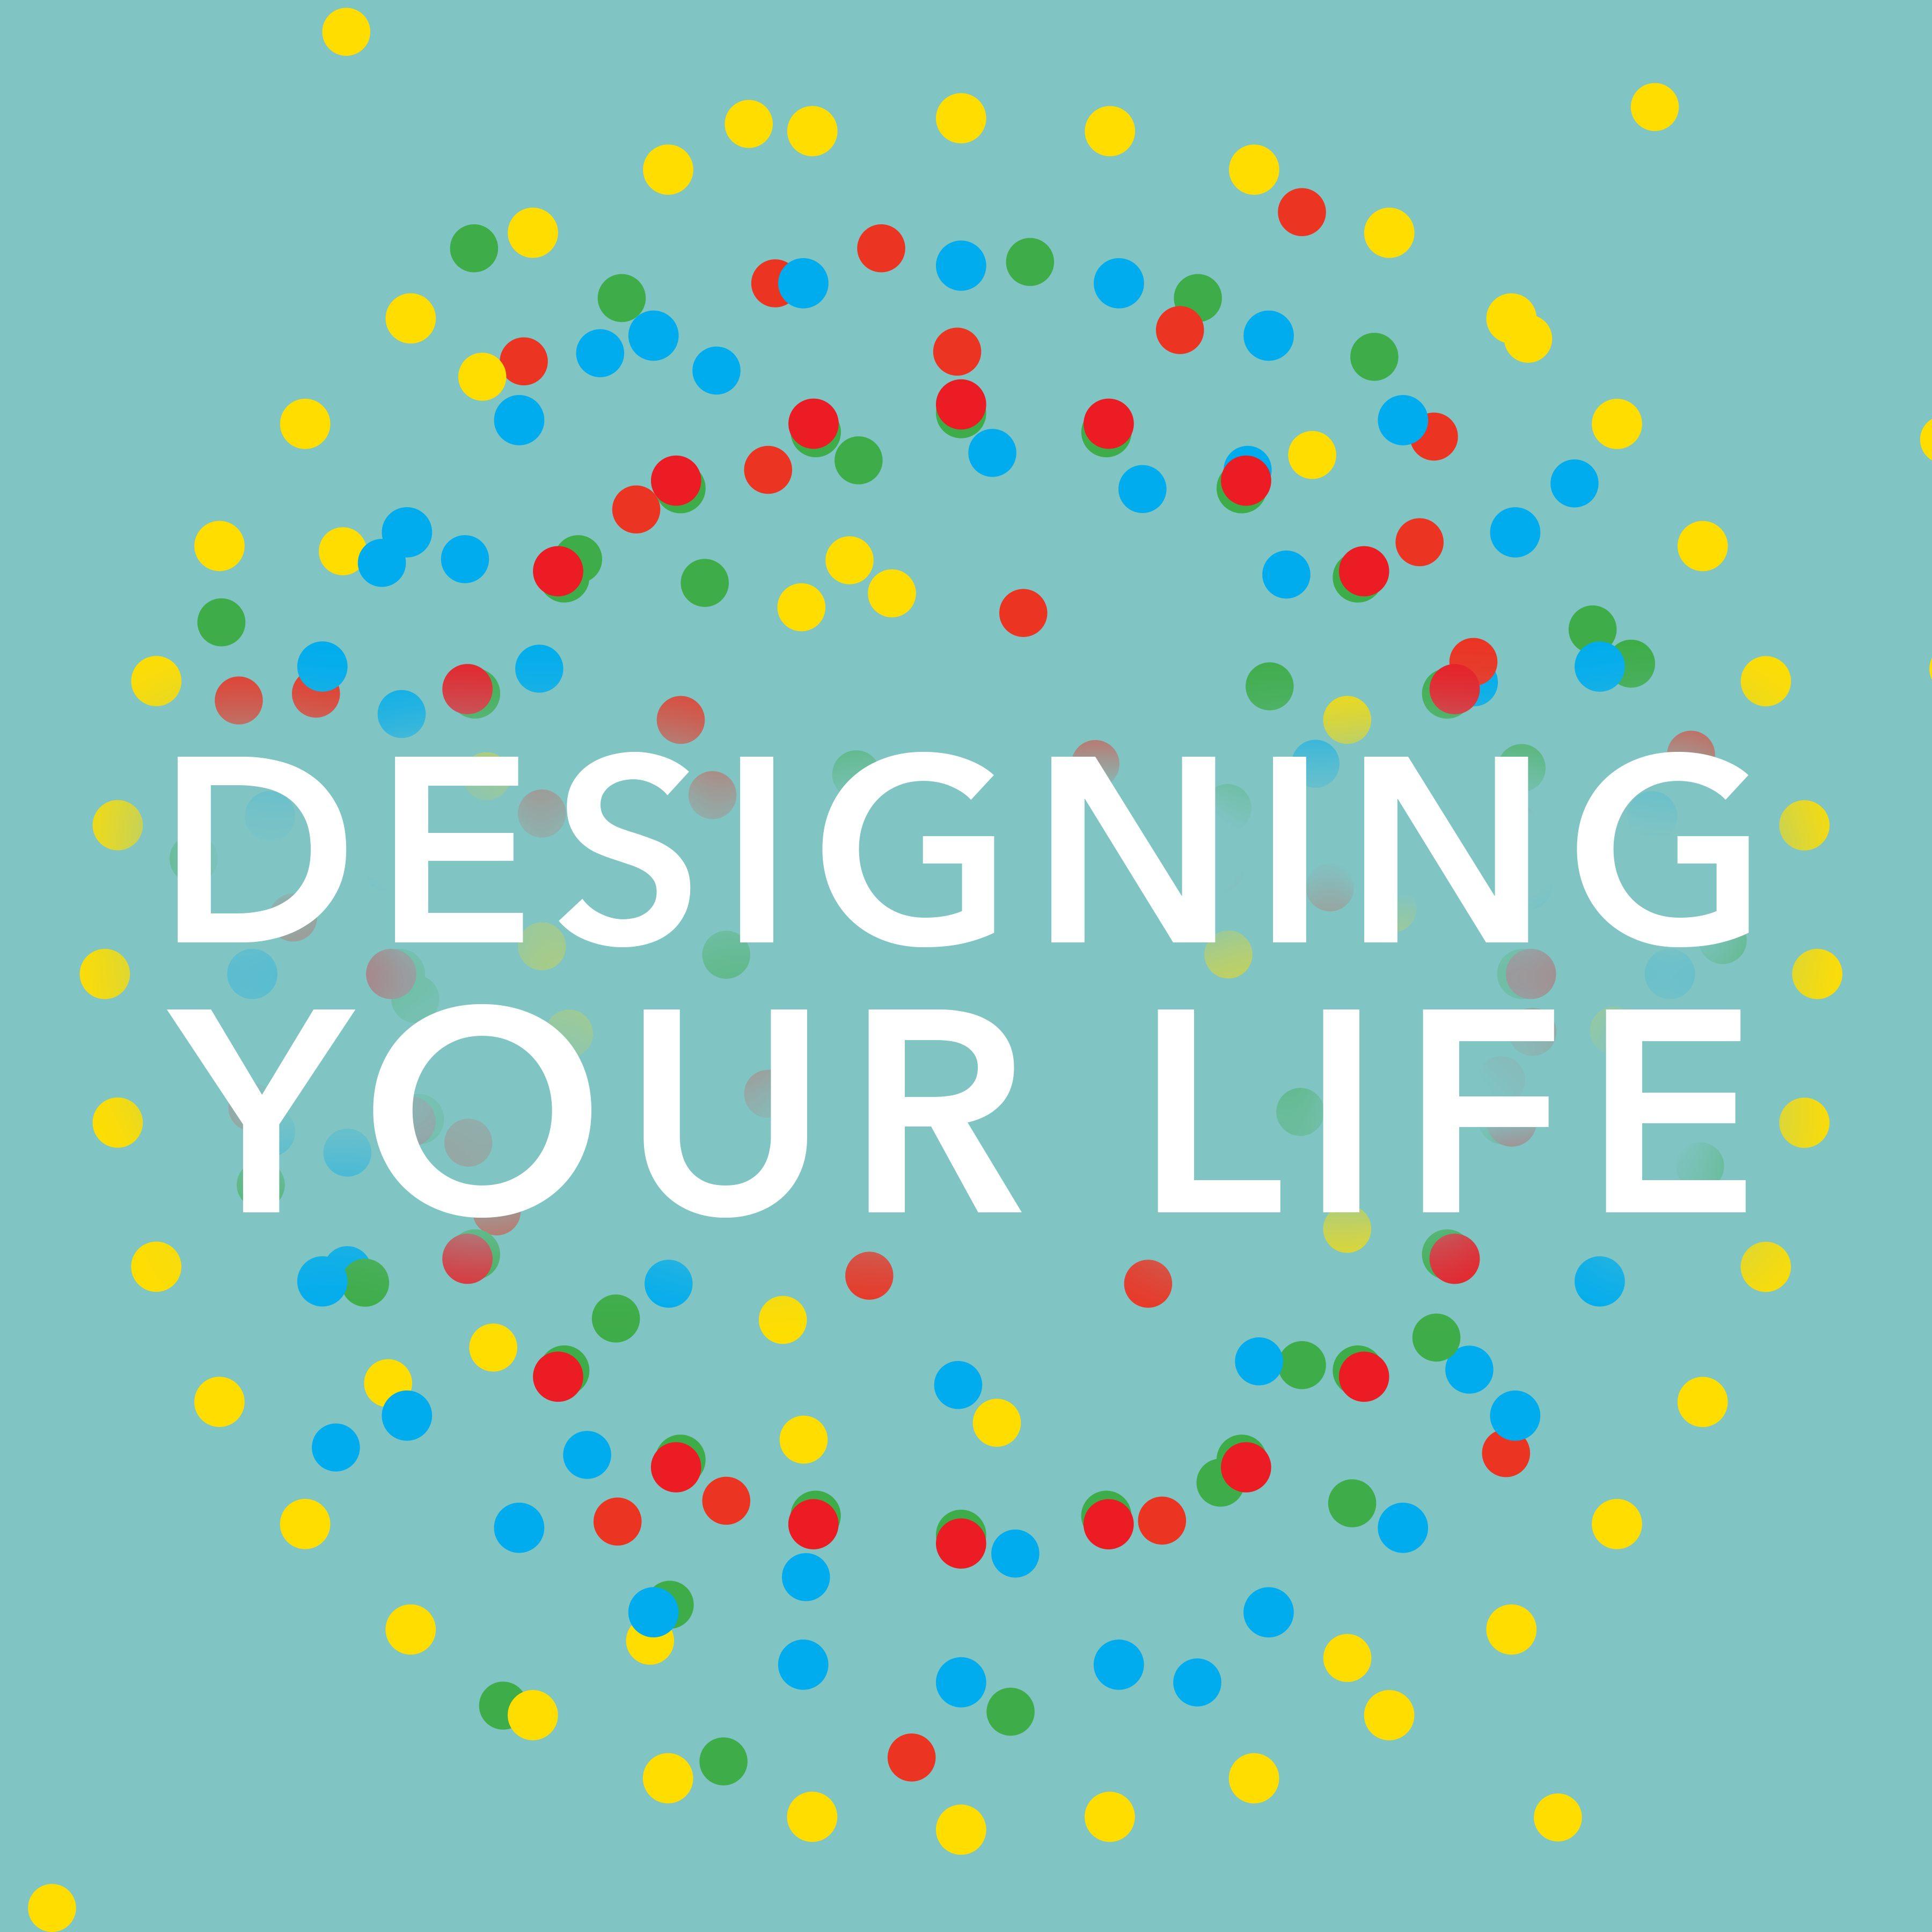 Life is design. Design your Life. Your Life. Your Design. Designing your Life [ Burnett & Evans, 2016.